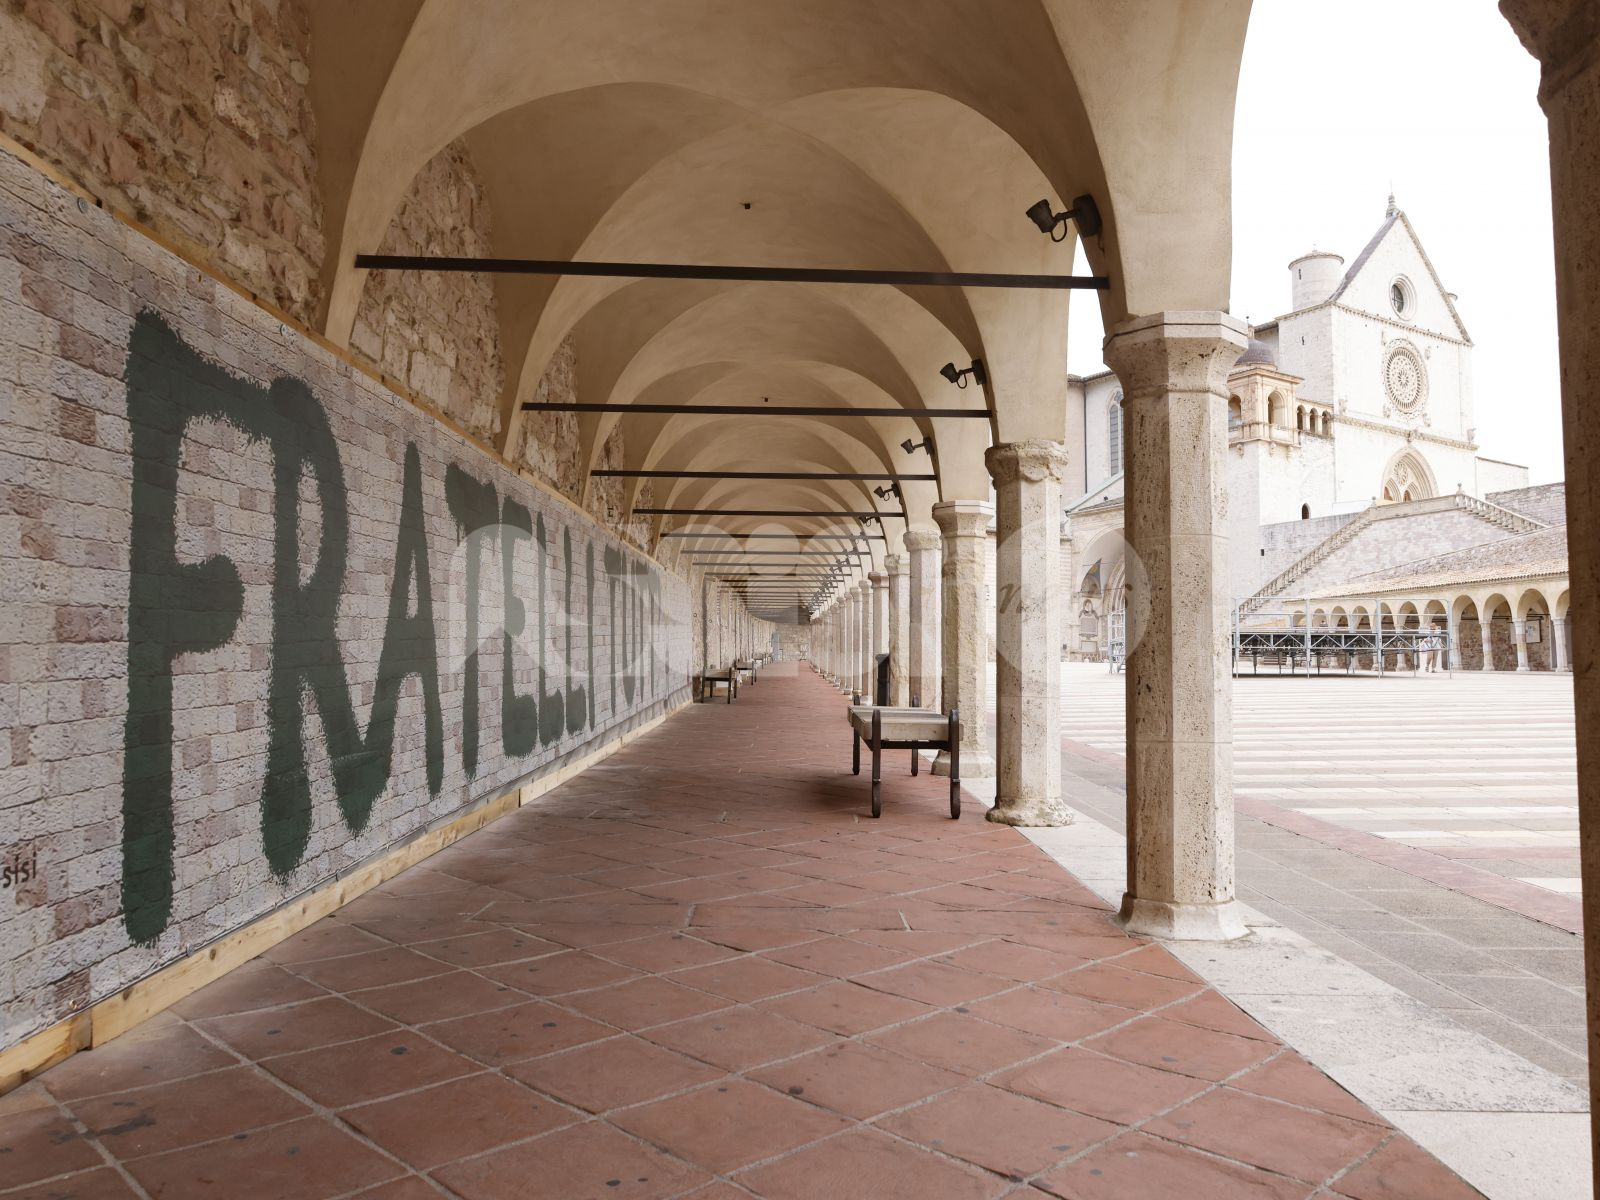 Papale Papale, nella Basilica di San Francesco fino al 6 novembre un'esposizione di urban art (foto)